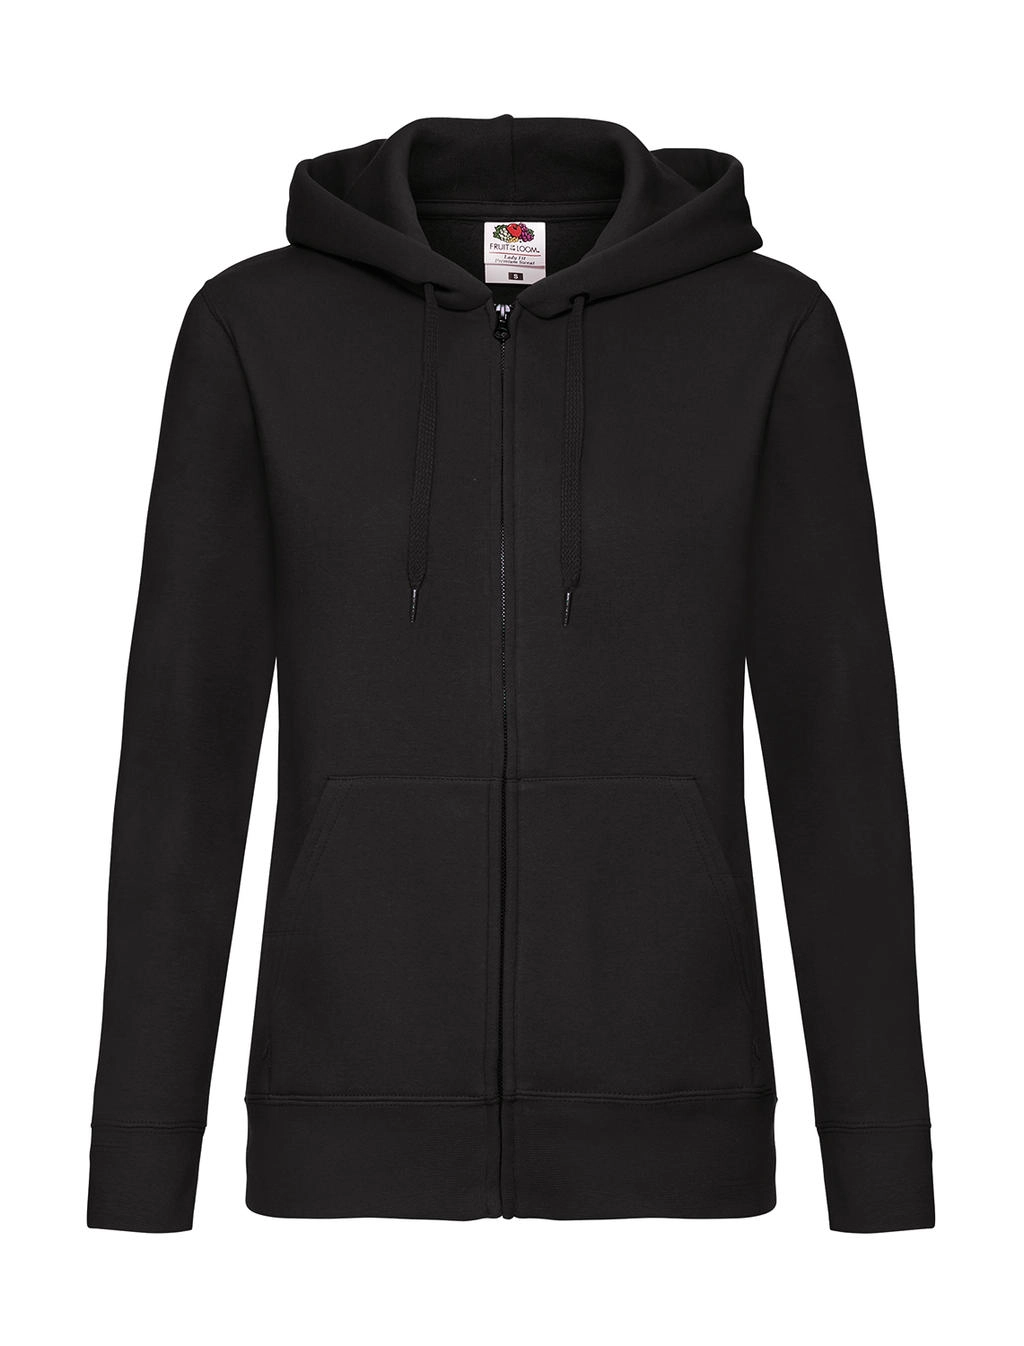 Premium Hooded Sweat Jacket Lady-Fit zum Besticken und Bedrucken in der Farbe Black mit Ihren Logo, Schriftzug oder Motiv.